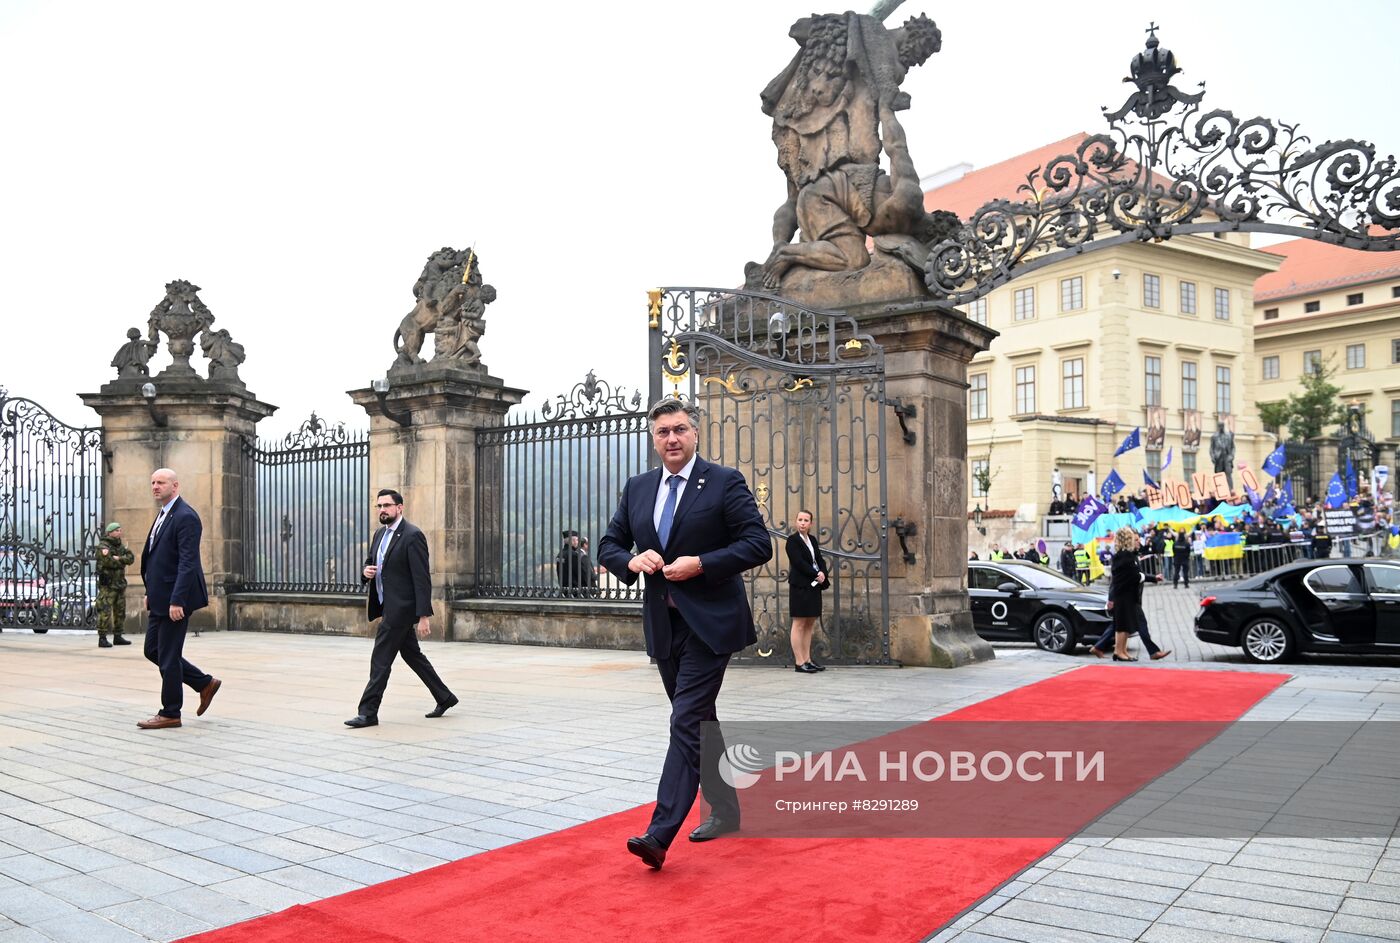 Прибытие участников неформального саммита ЕС в Чехии